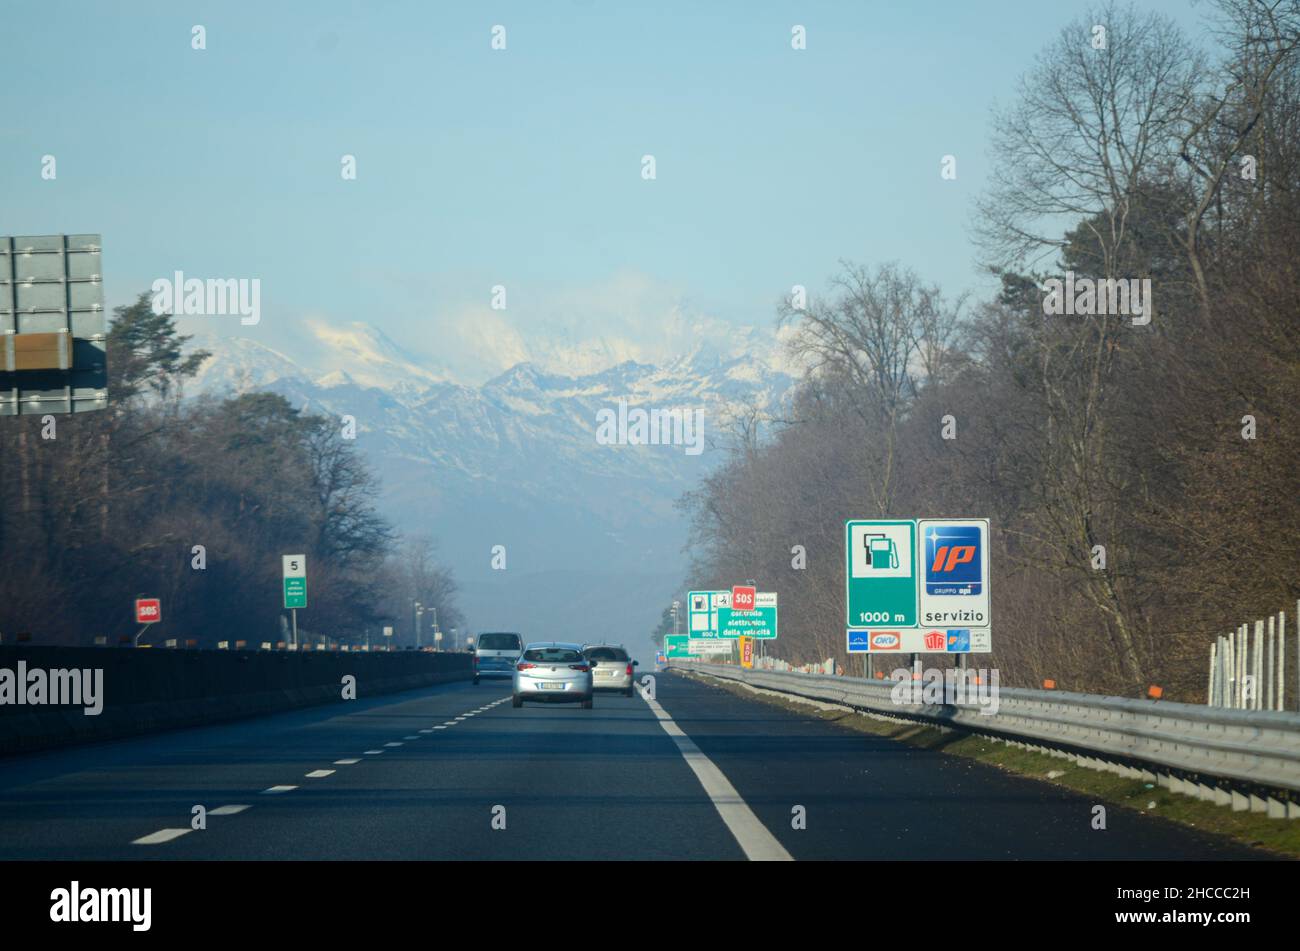 Mailand A8 Autobahn Milano Laghi, Italien - Dezember 26th 2021 Telepass automatische Pass-Abonnement gelbe Spuren für Non-Stop-Fahren und blaue Kreditkarte Stockfoto